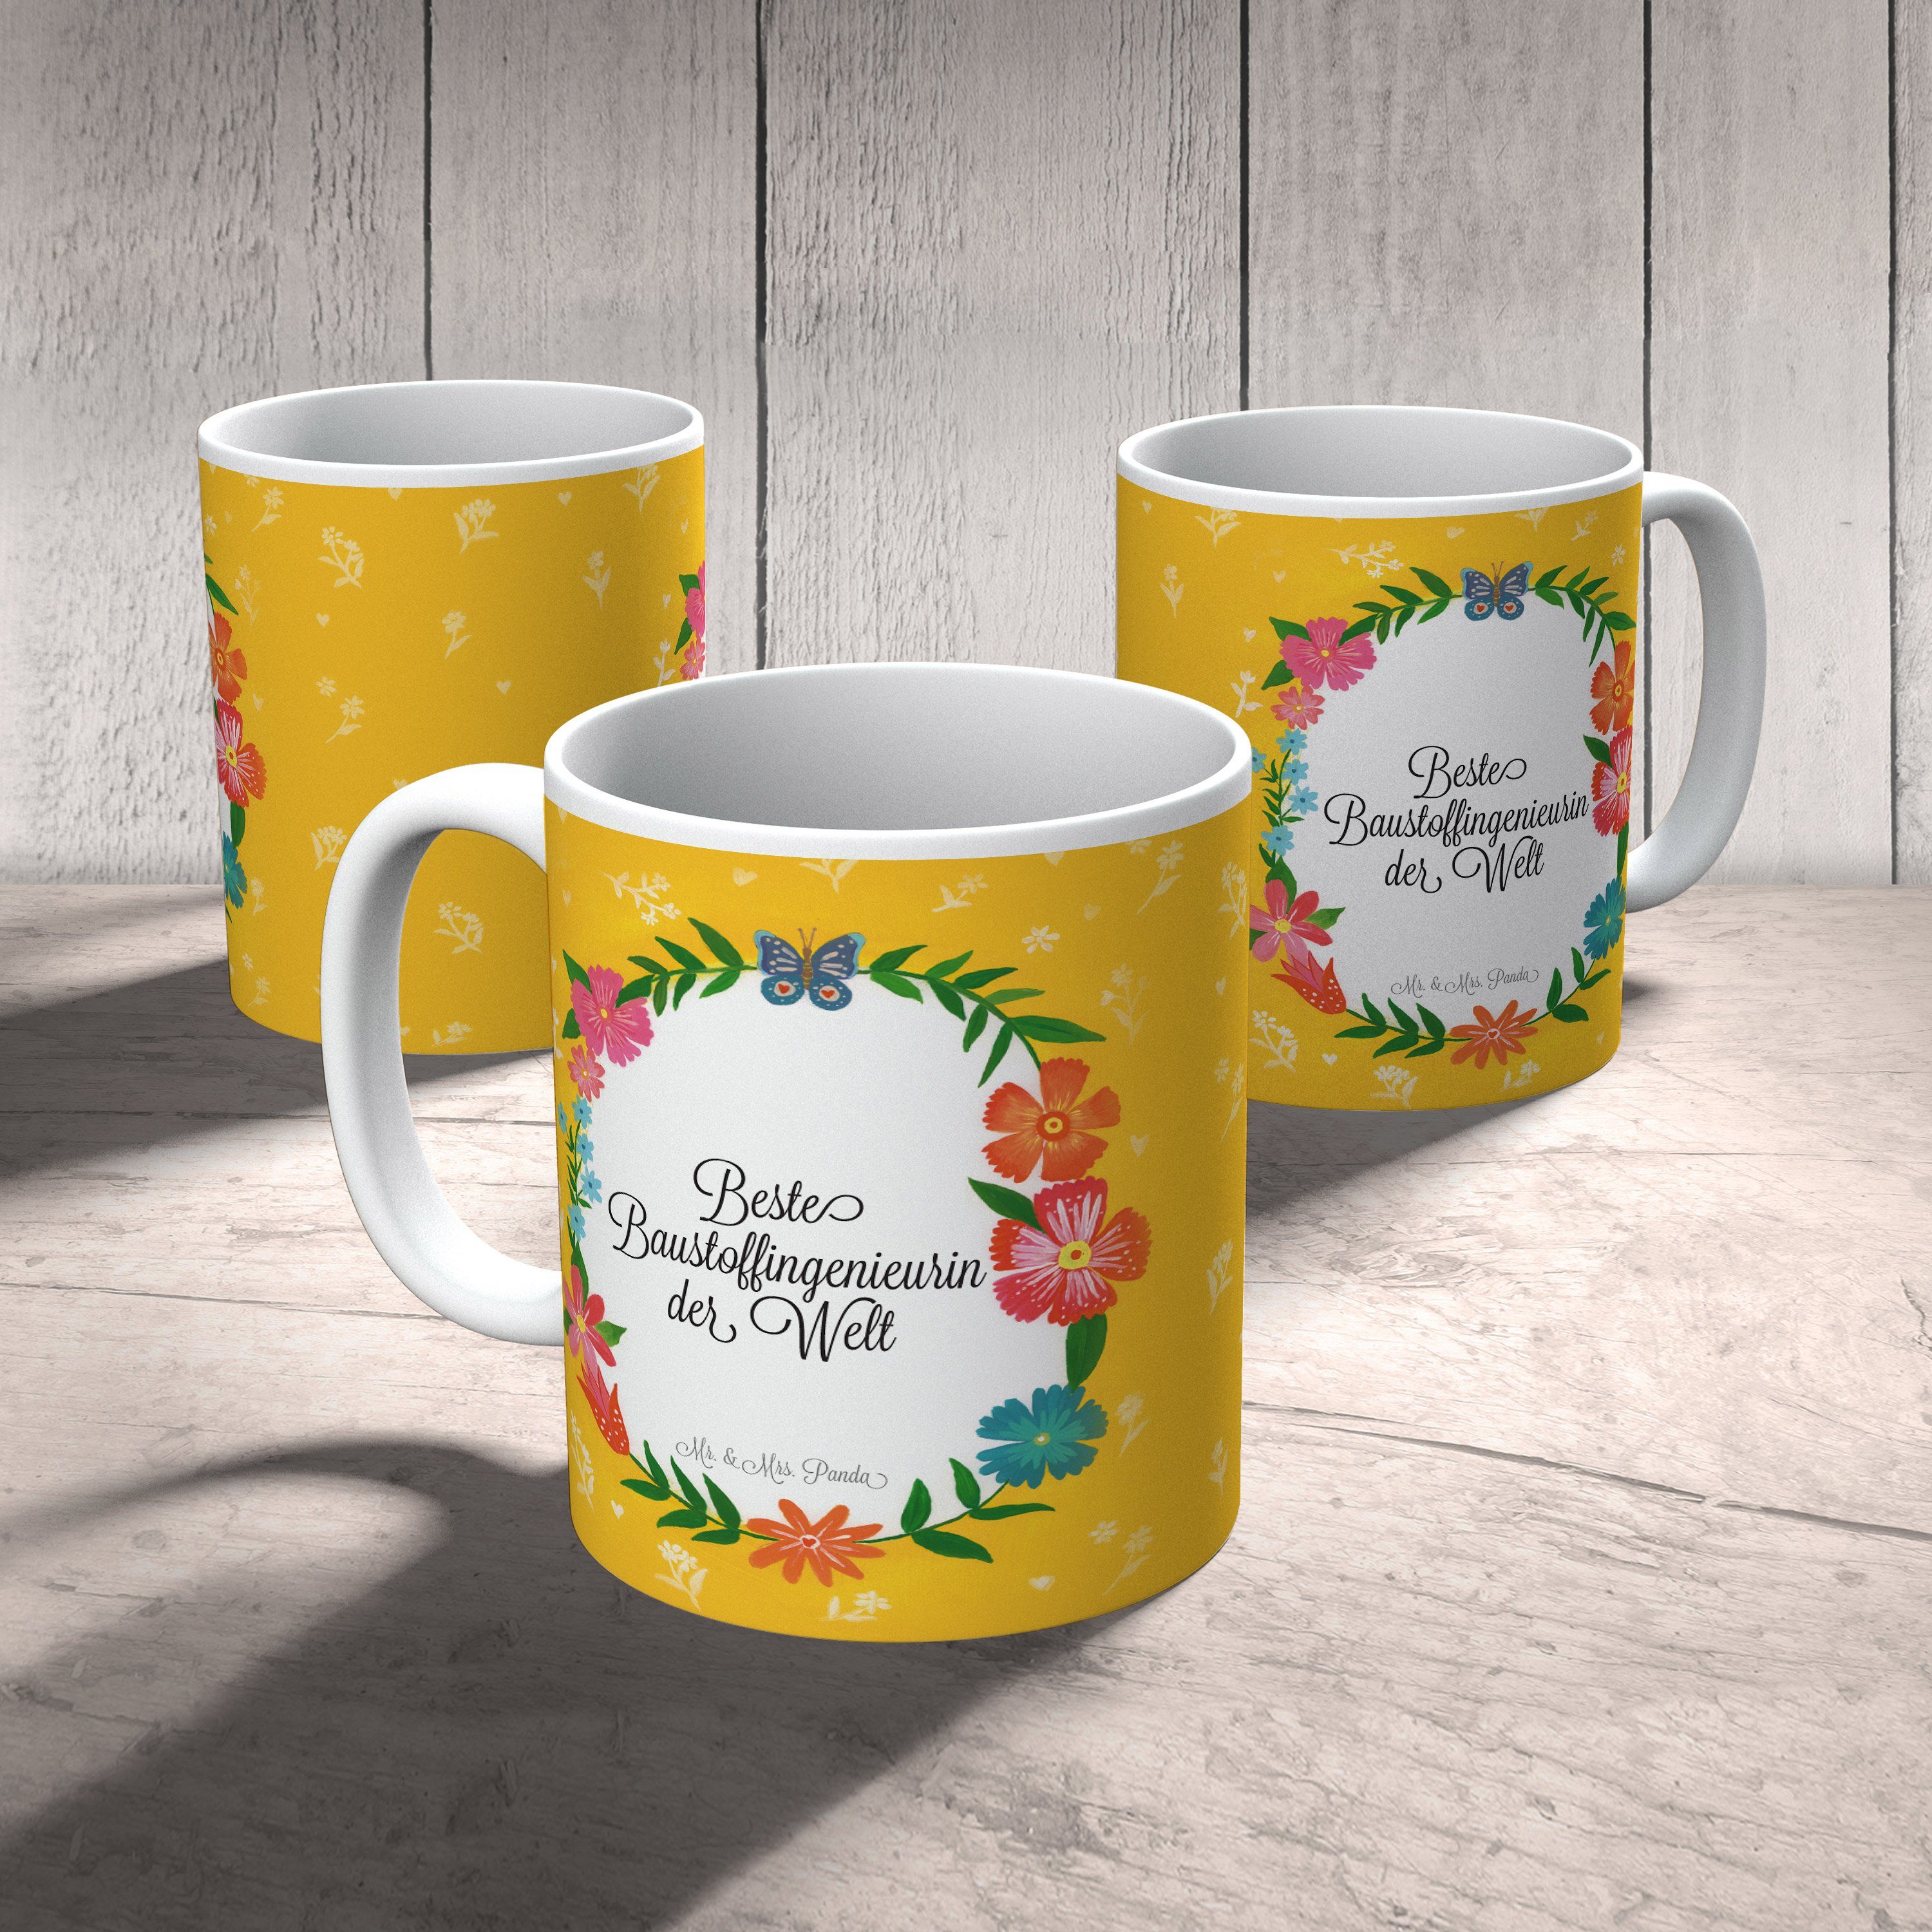 Mr. & Mrs. Panda Motive, Tasse Tasse Sprüche, - Tasse Geschenk, Baustoffingenieurin Keramik Schenken